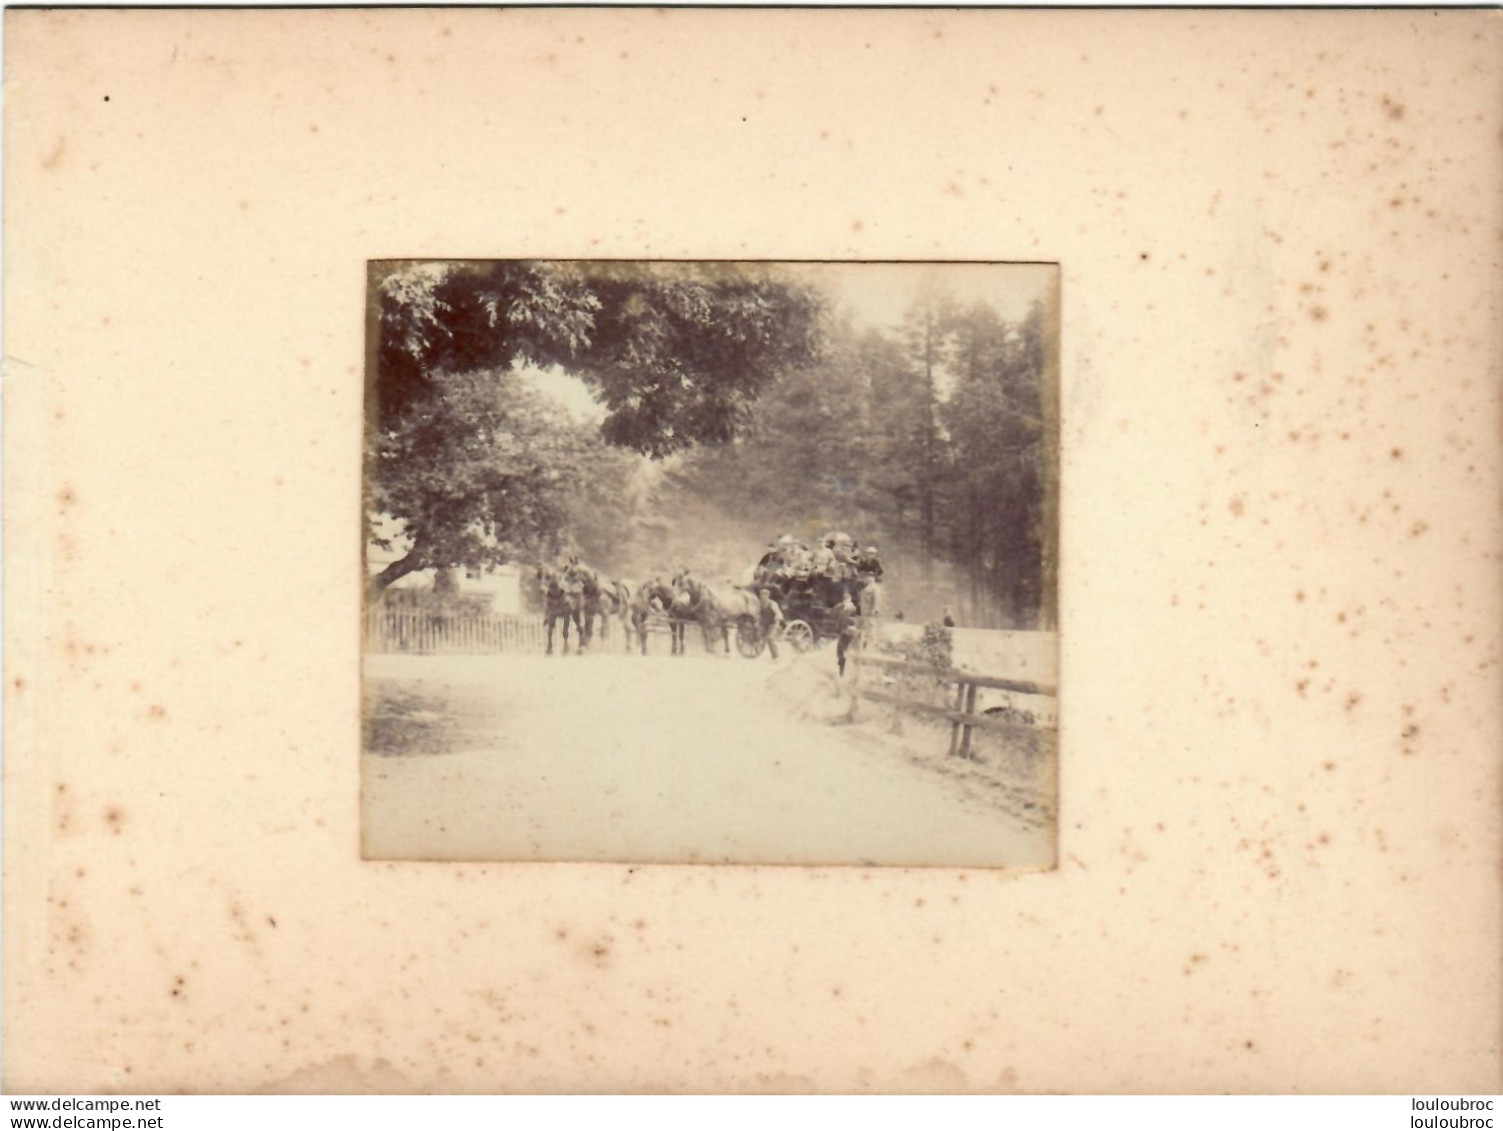 ECOSSE ROUTE D'ABERDEEN A BALMORAL LE MAIL COACH FIN 19e PHOTO ORIGINALE DE 8.50X7 CM COLLEE SUR CARTON 18X13CM - Old (before 1900)